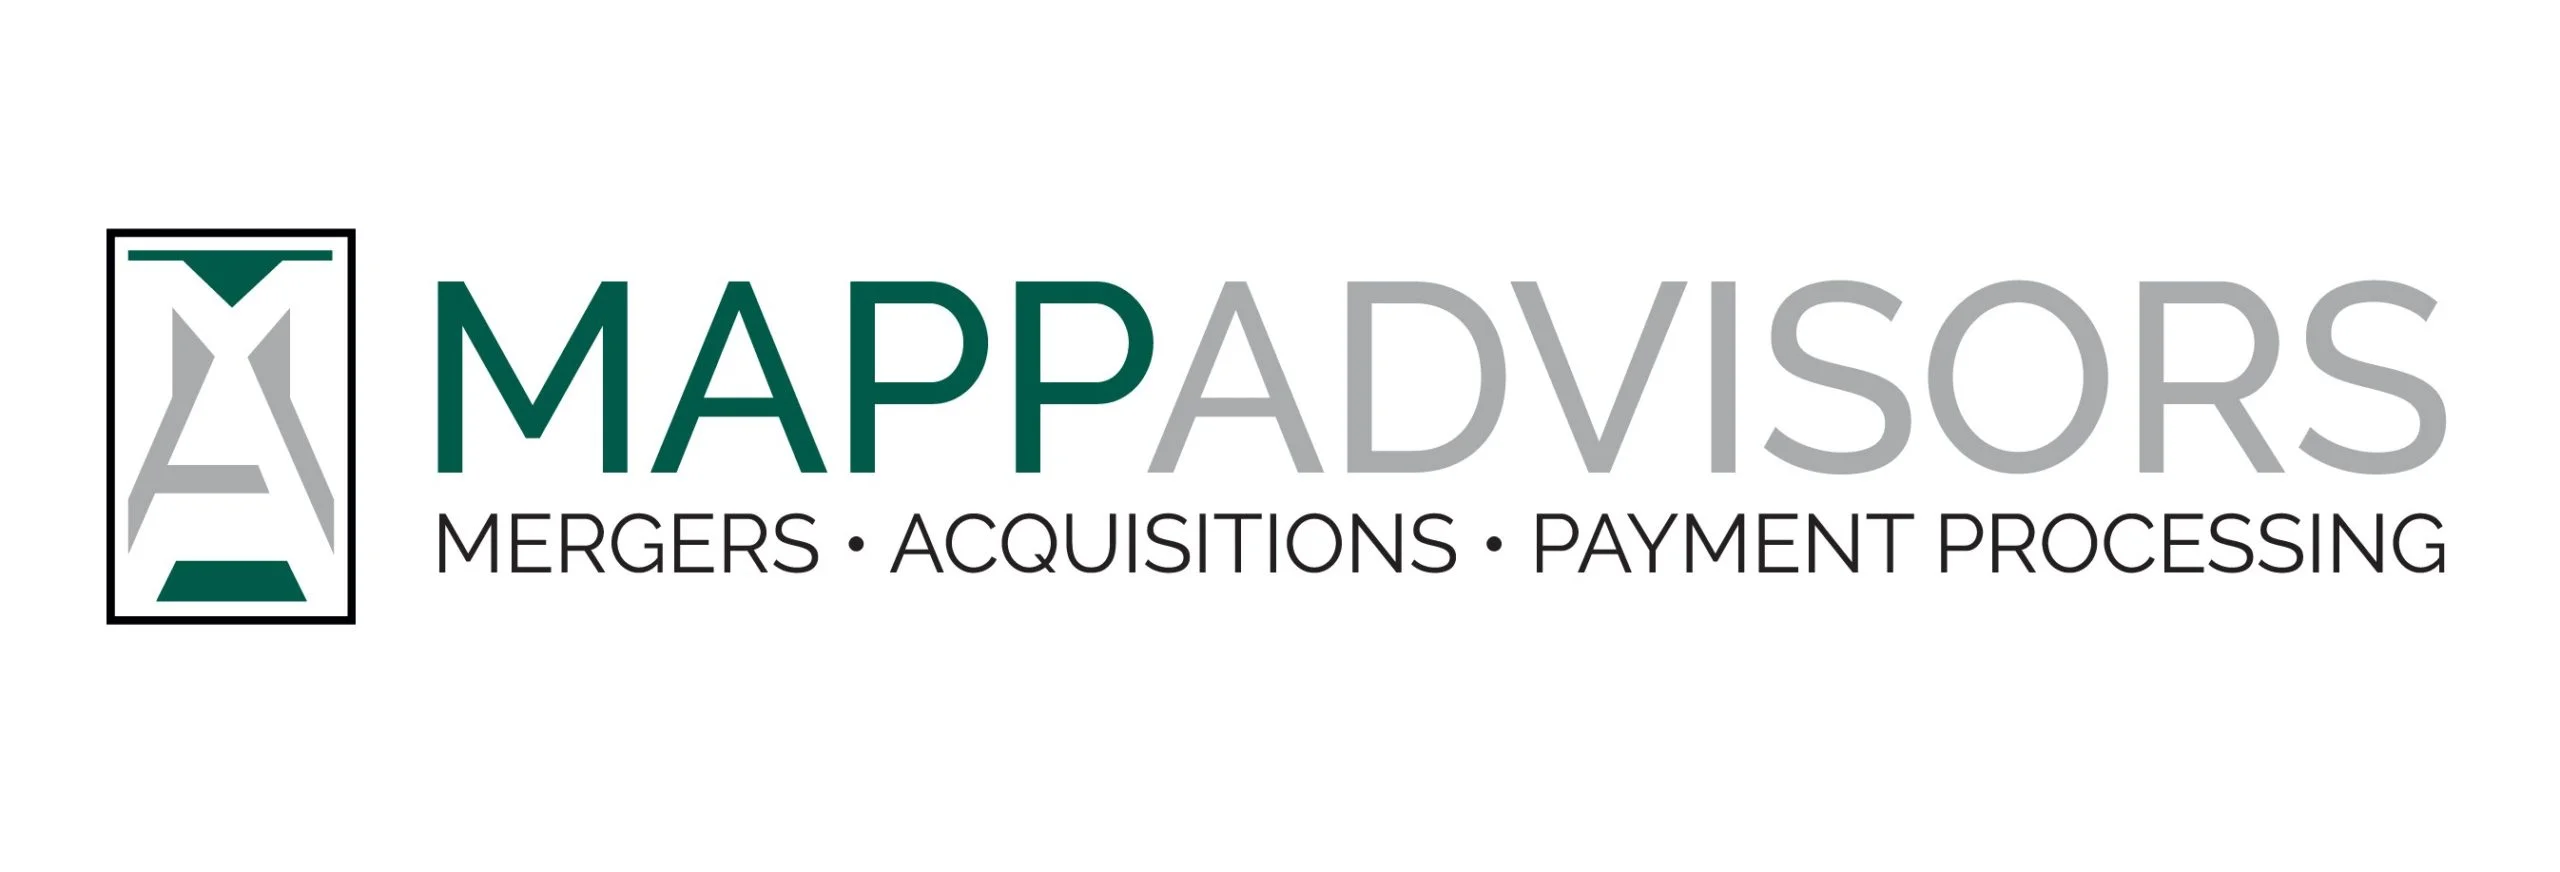 Mapp Advisors Logo